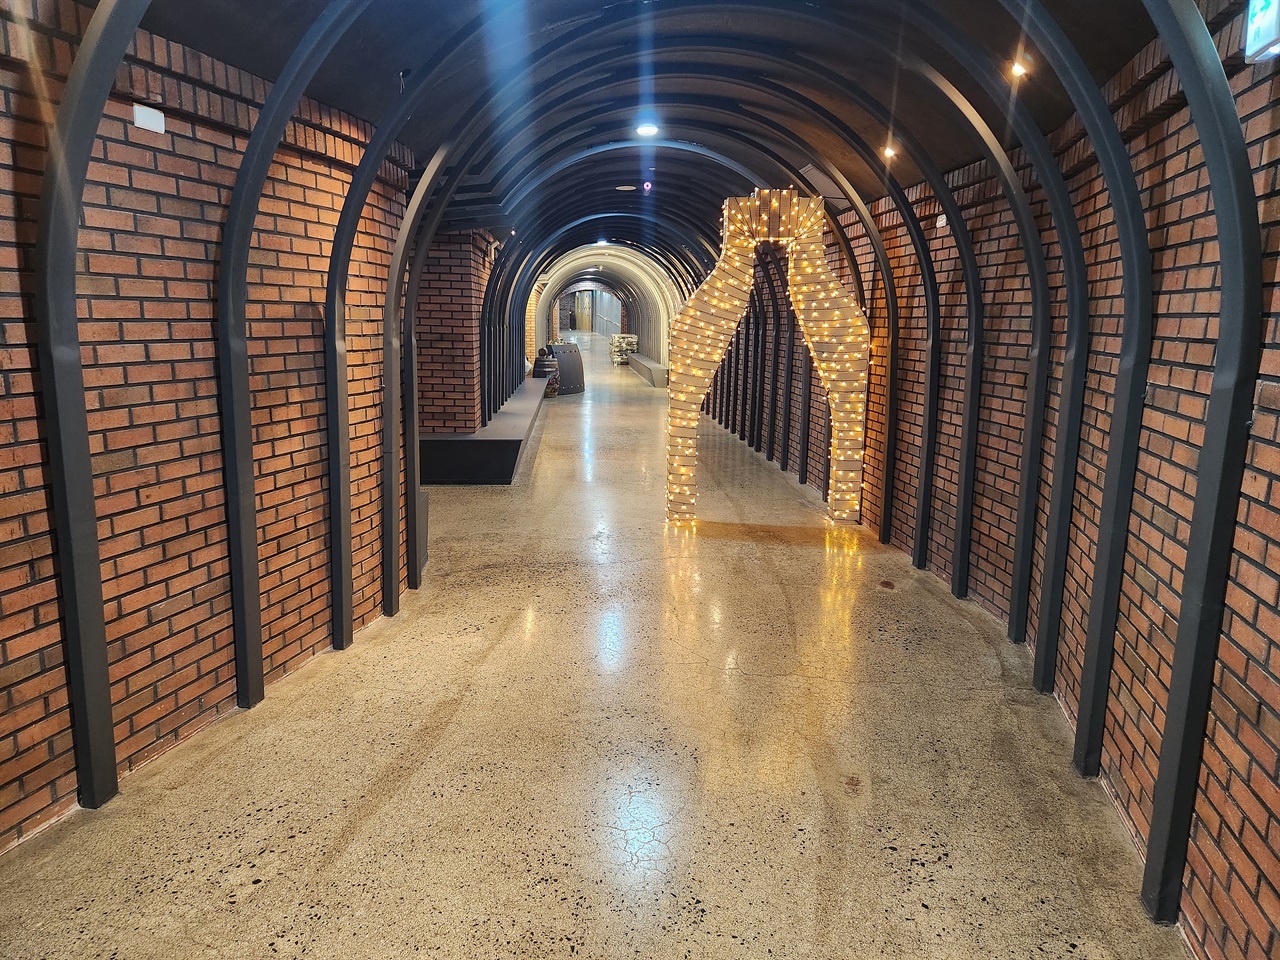 영천와인터널 내에 있는 와인병 형상 포토존 모습